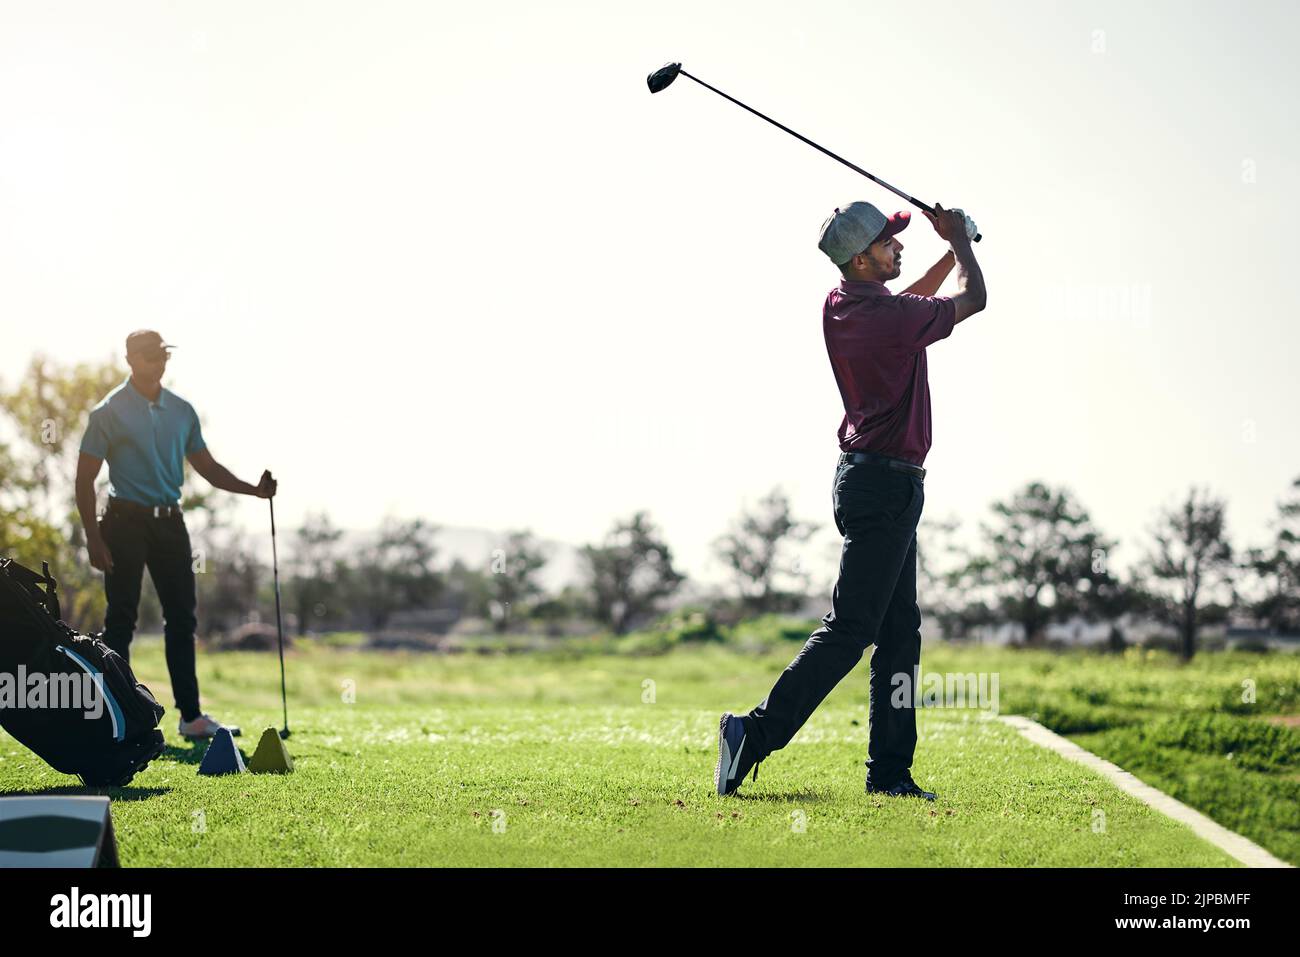 Gut gespielt. Ein fokussierter junger Golfer, der kurz davor steht, draußen auf einem Golfplatz mit seinem Golfschläger zu schwingen und einen Schuss zu spielen. Stockfoto